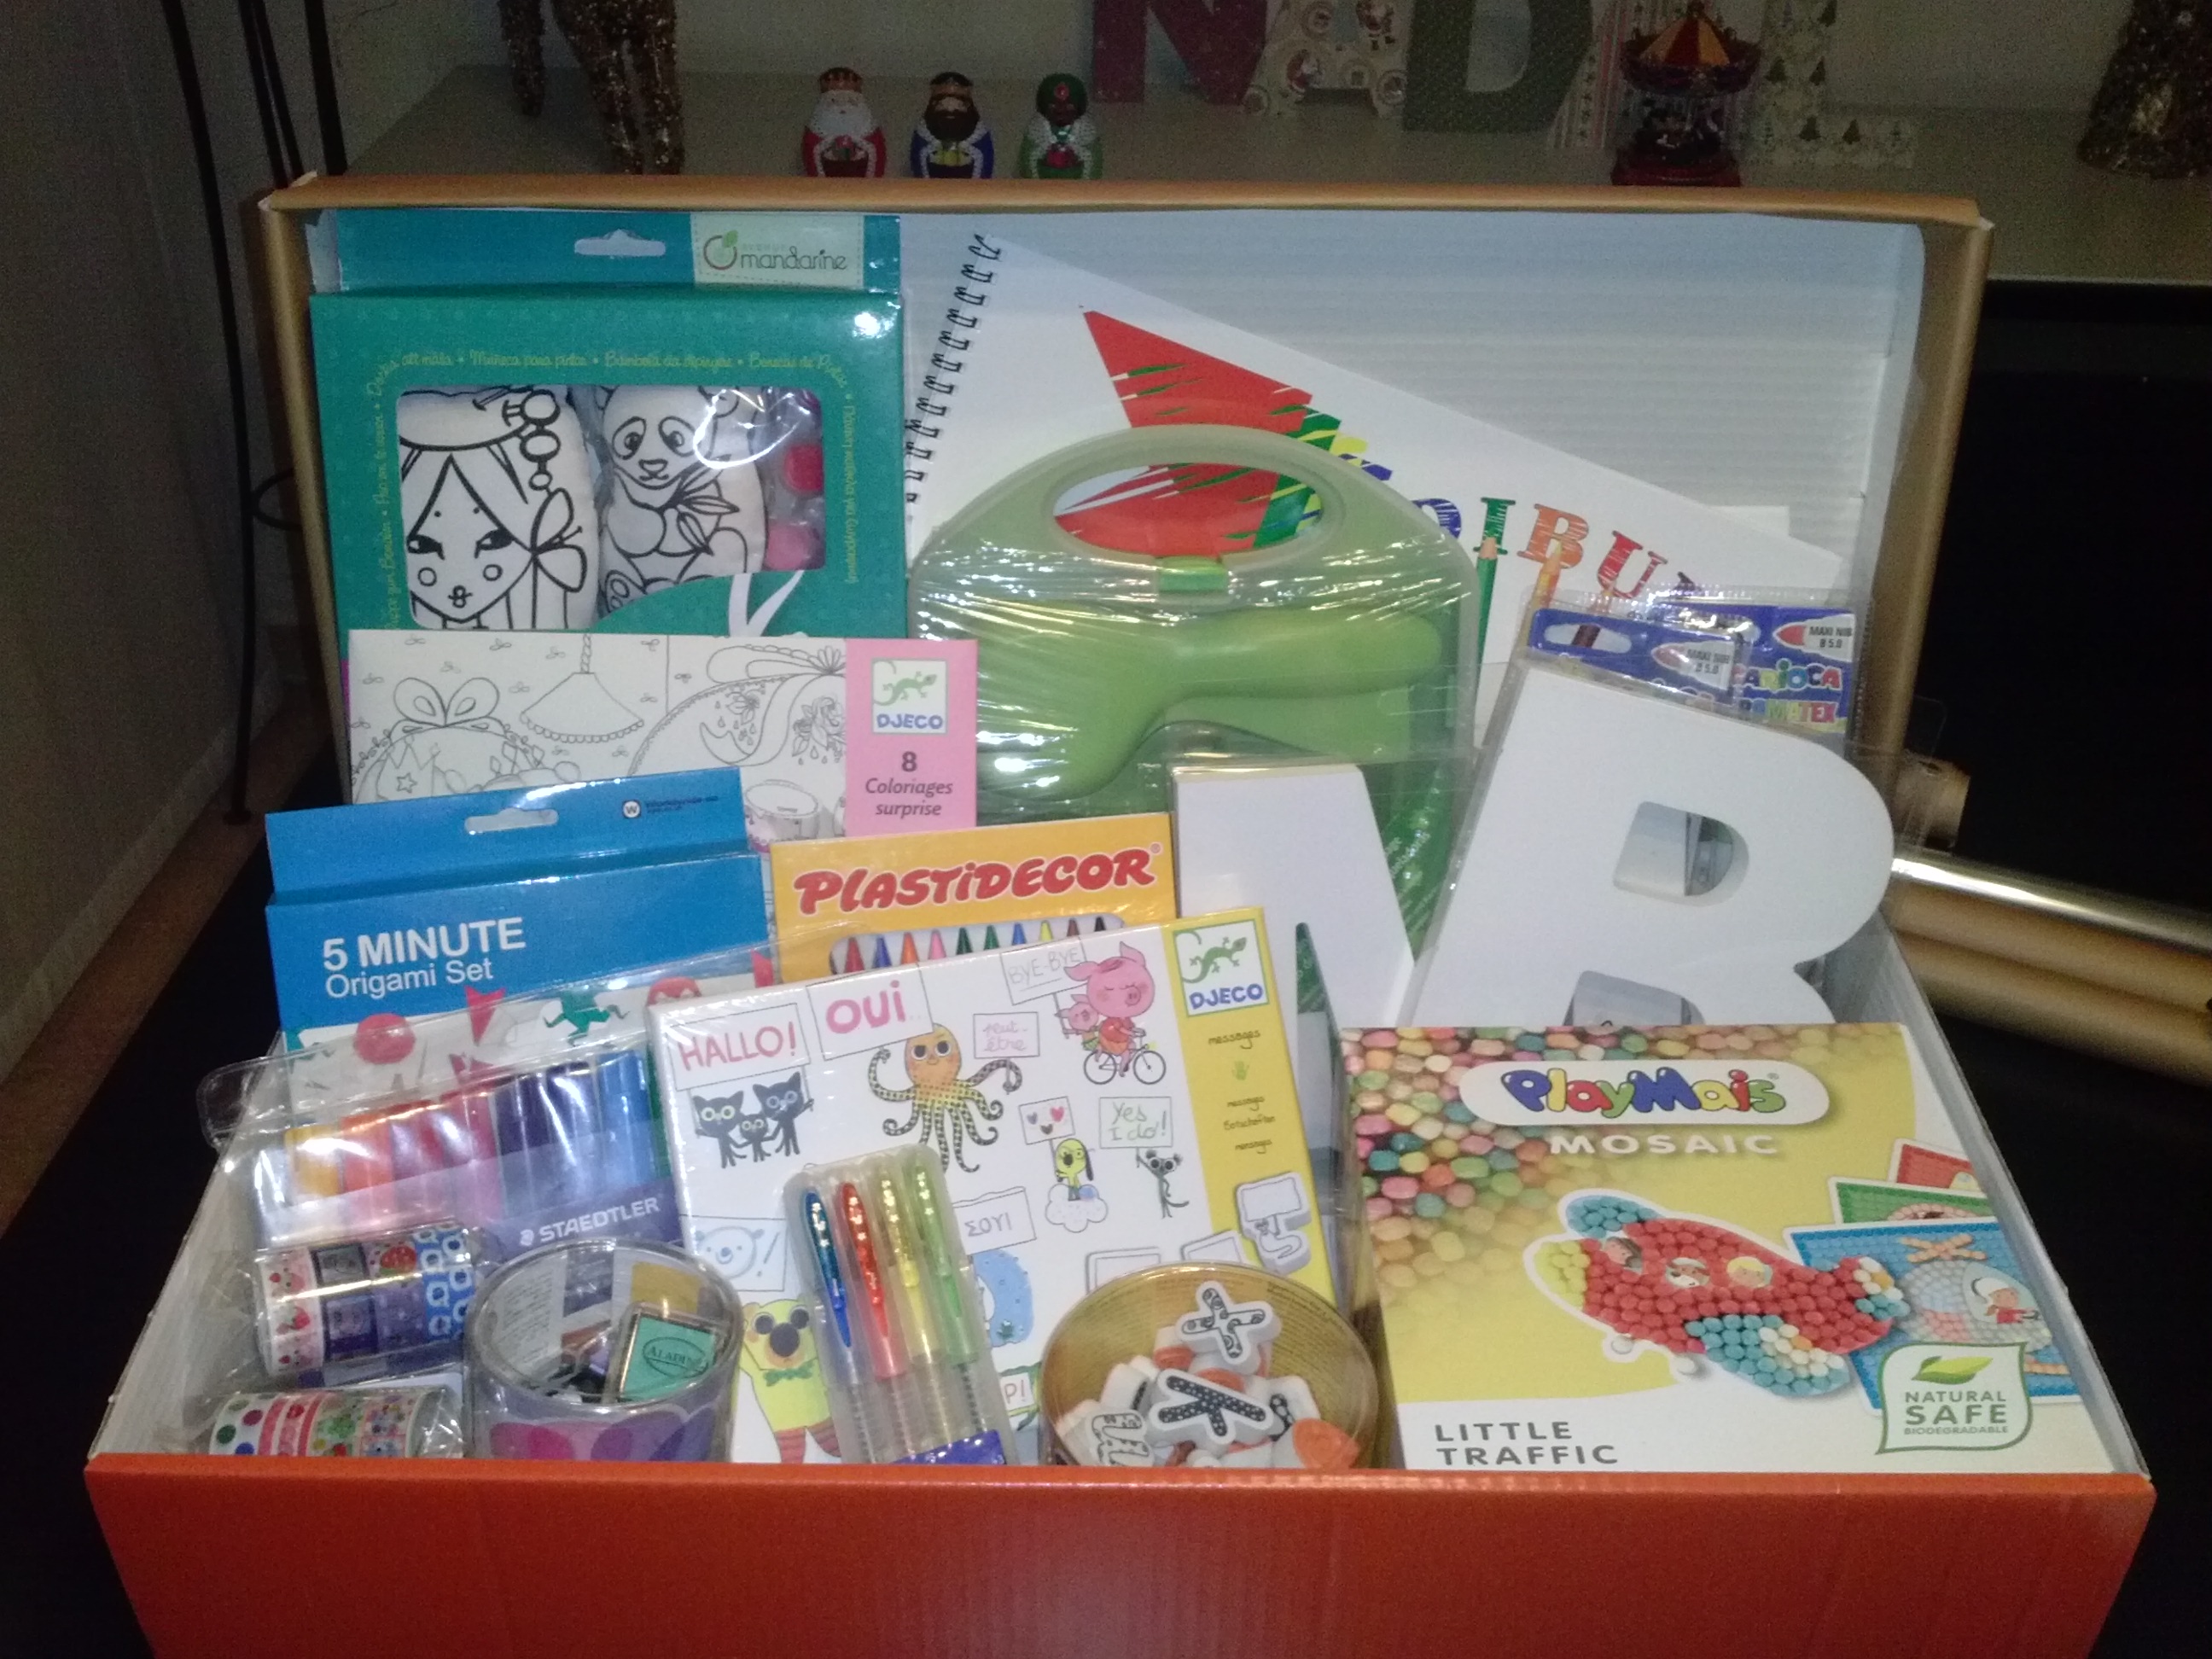 Ideas de regalo: Una caja de manualidades para niños